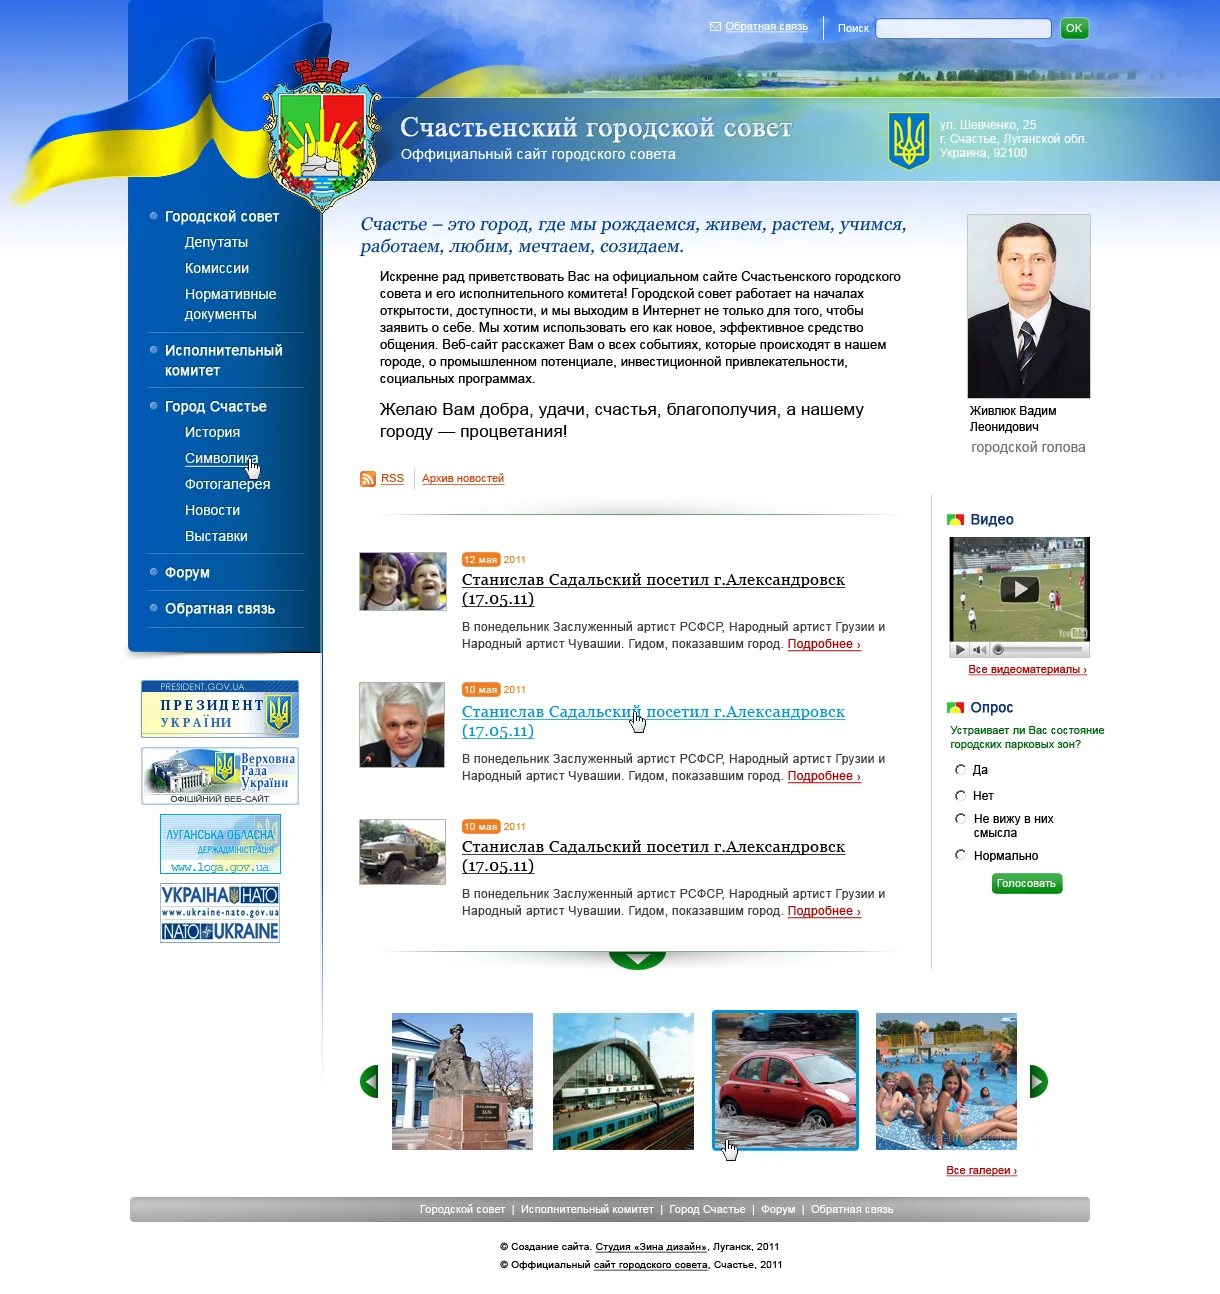 Создание сайта Счастьинского городского совета - Главная страница